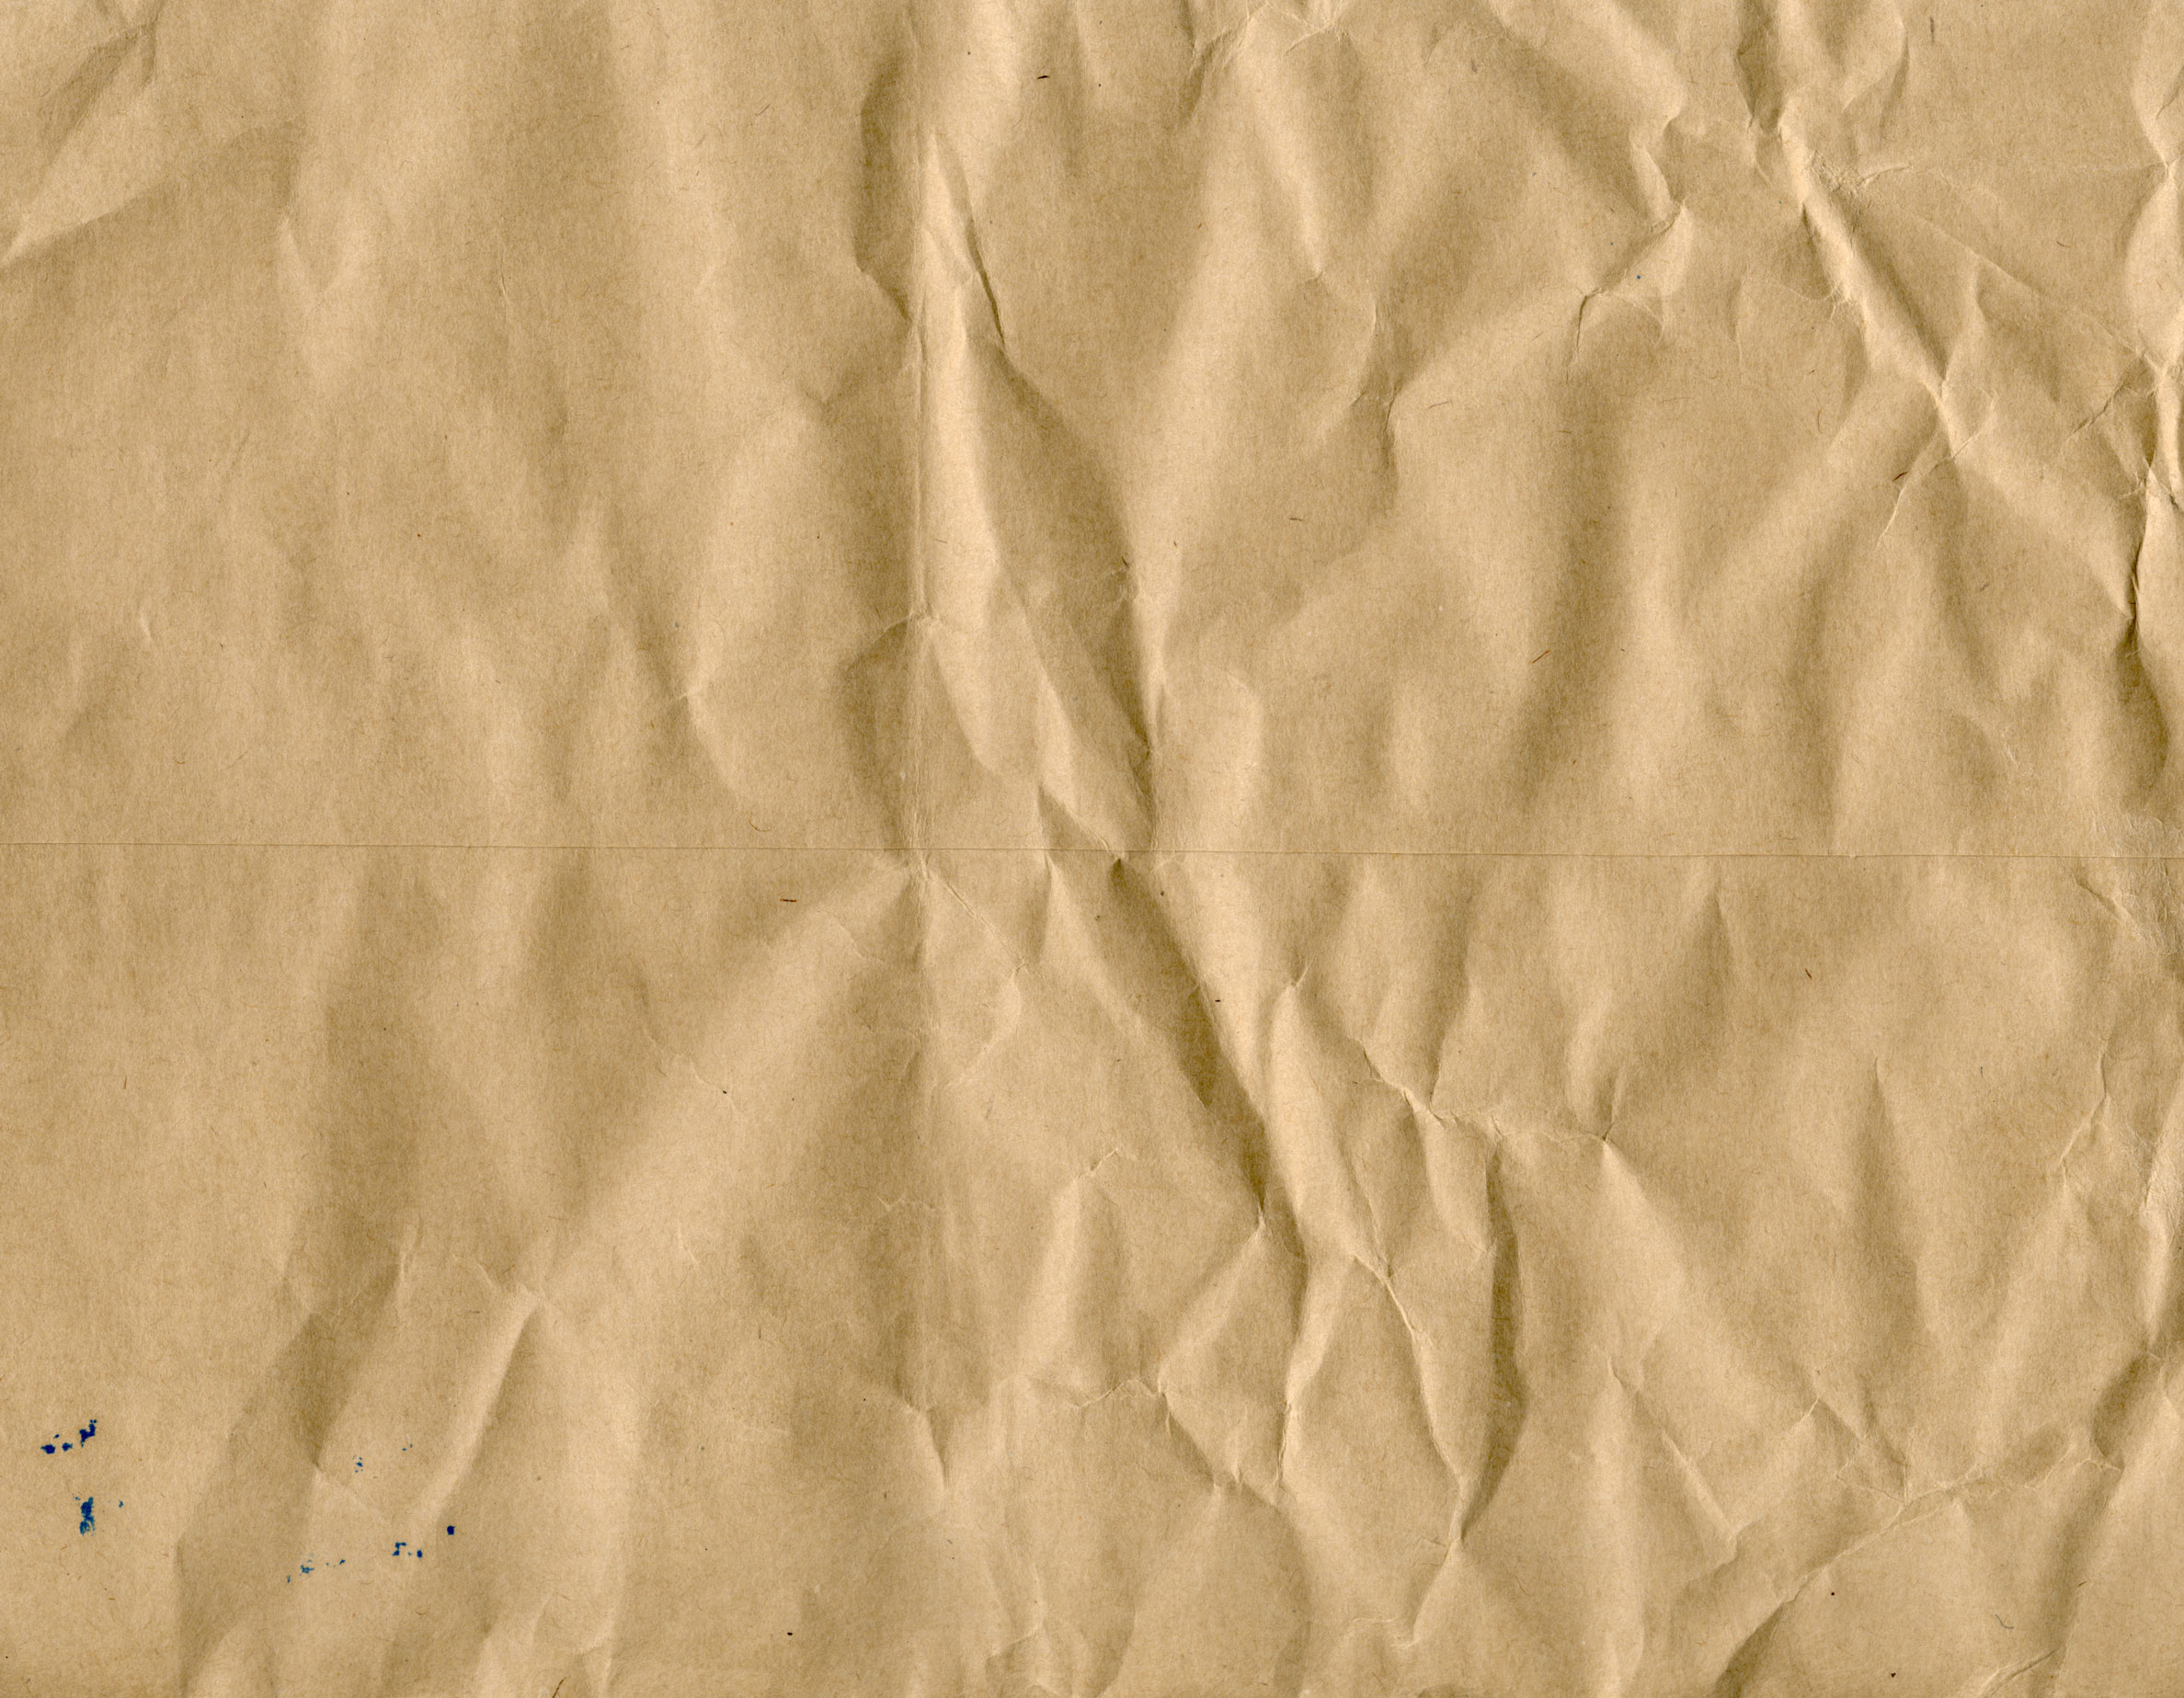 текстура бумаги, paper texture, старая помятая бумага, скачать фото, изображение, фон, background